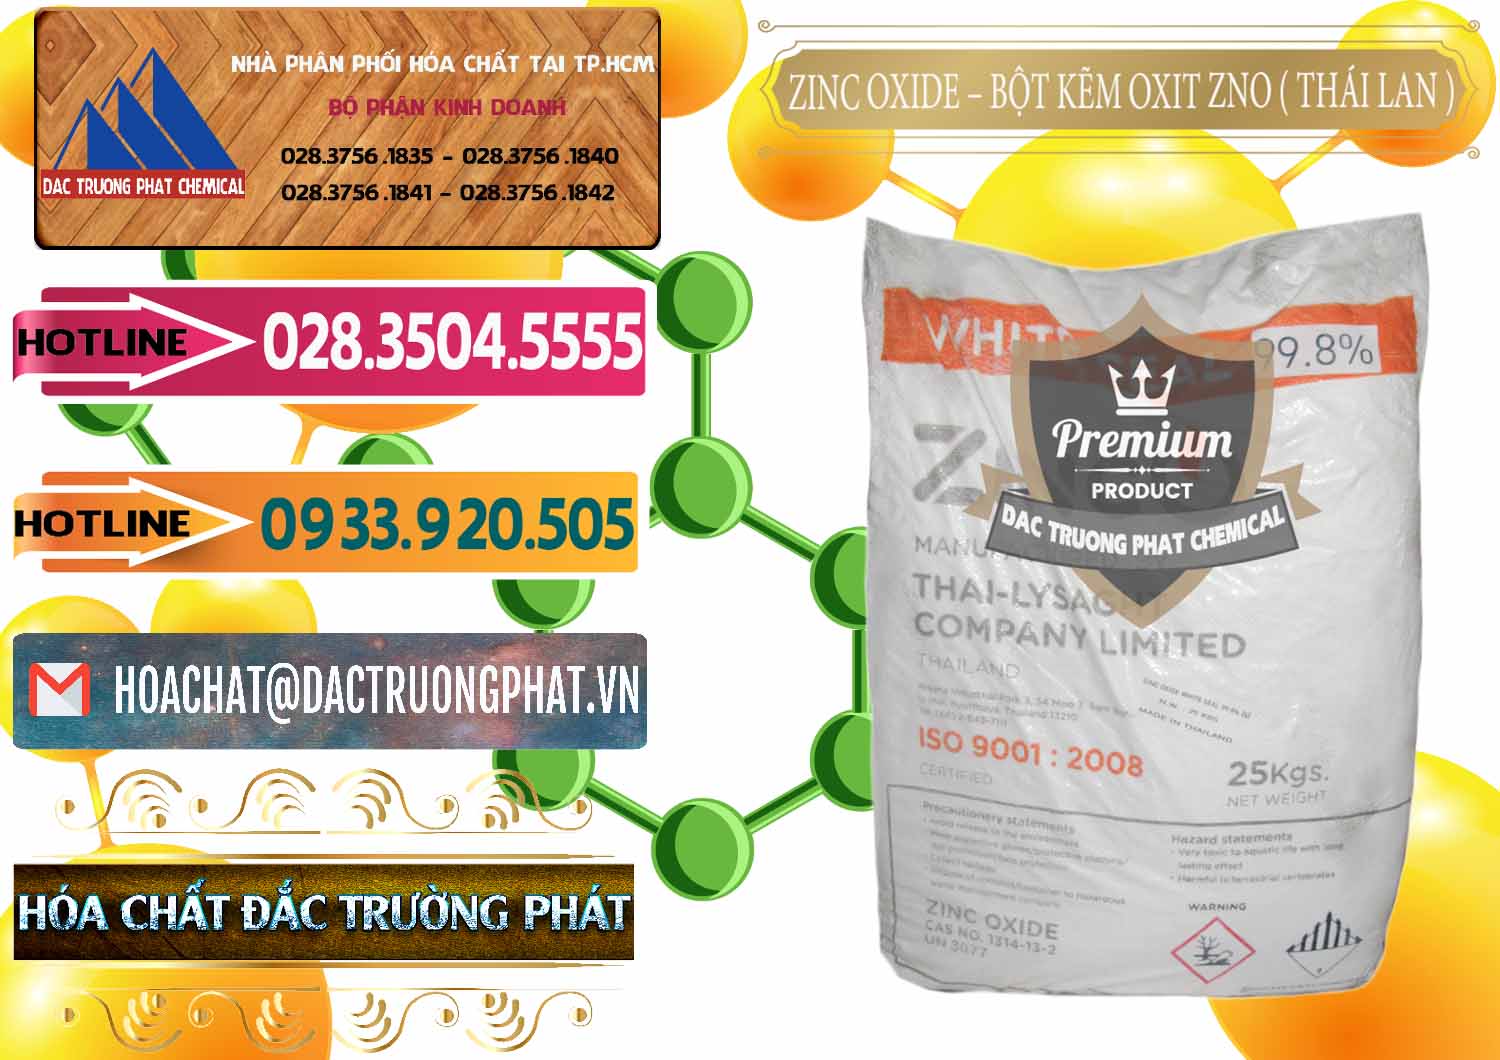 Cty kinh doanh - bán Zinc Oxide - Bột Kẽm Oxit ZNO Thái Lan Thailand - 0181 - Cty nhập khẩu & phân phối hóa chất tại TP.HCM - dactruongphat.vn